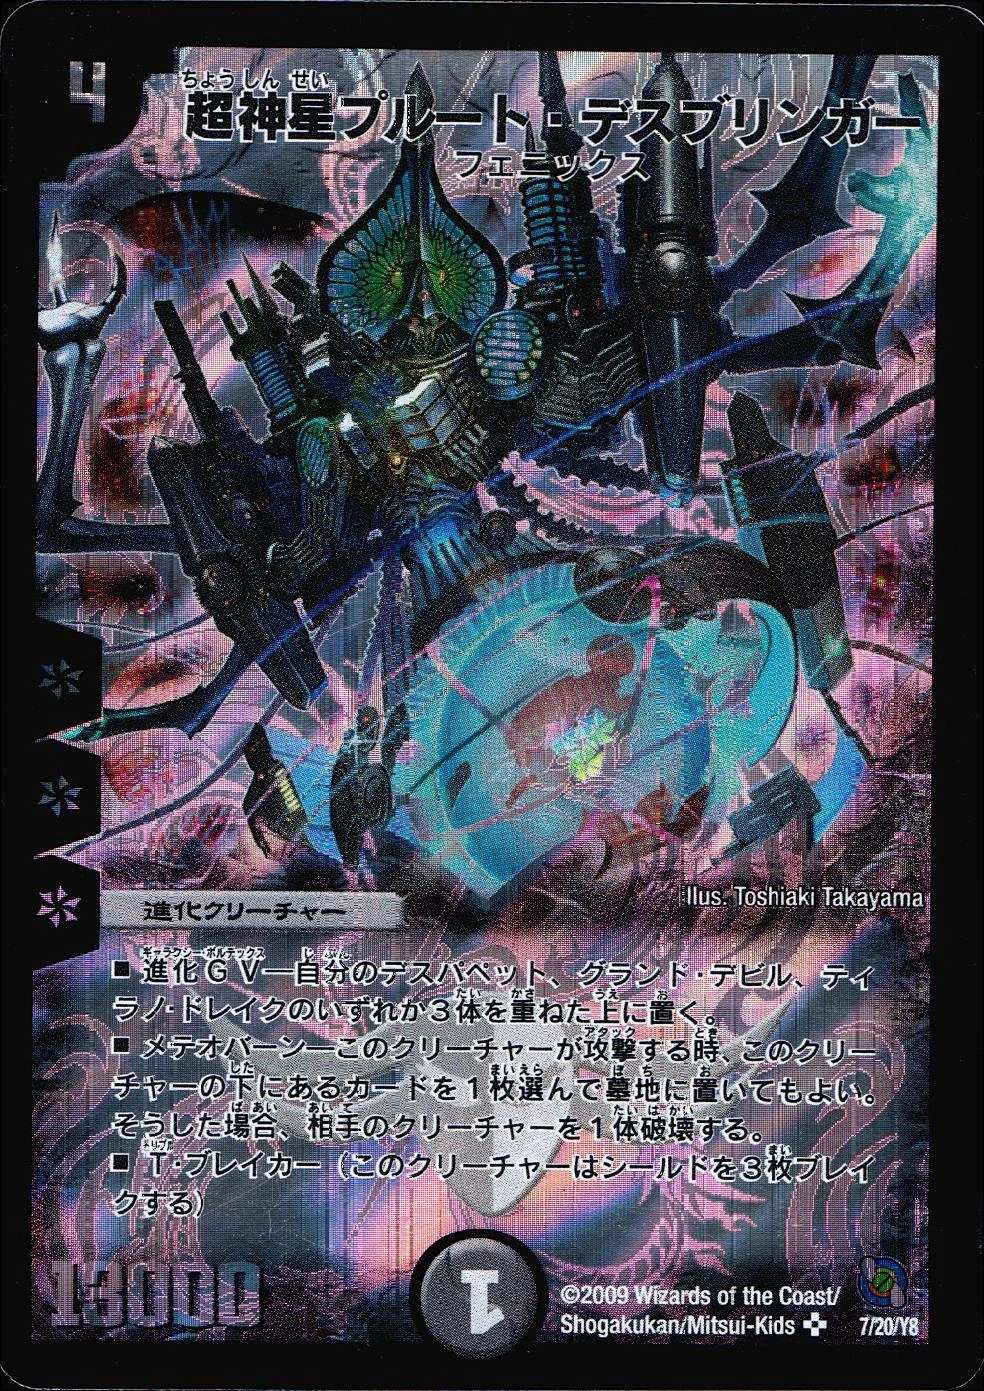 ふるいちオンライン - 超神星プルート・デスブリンガー 【SR】 DMC547 